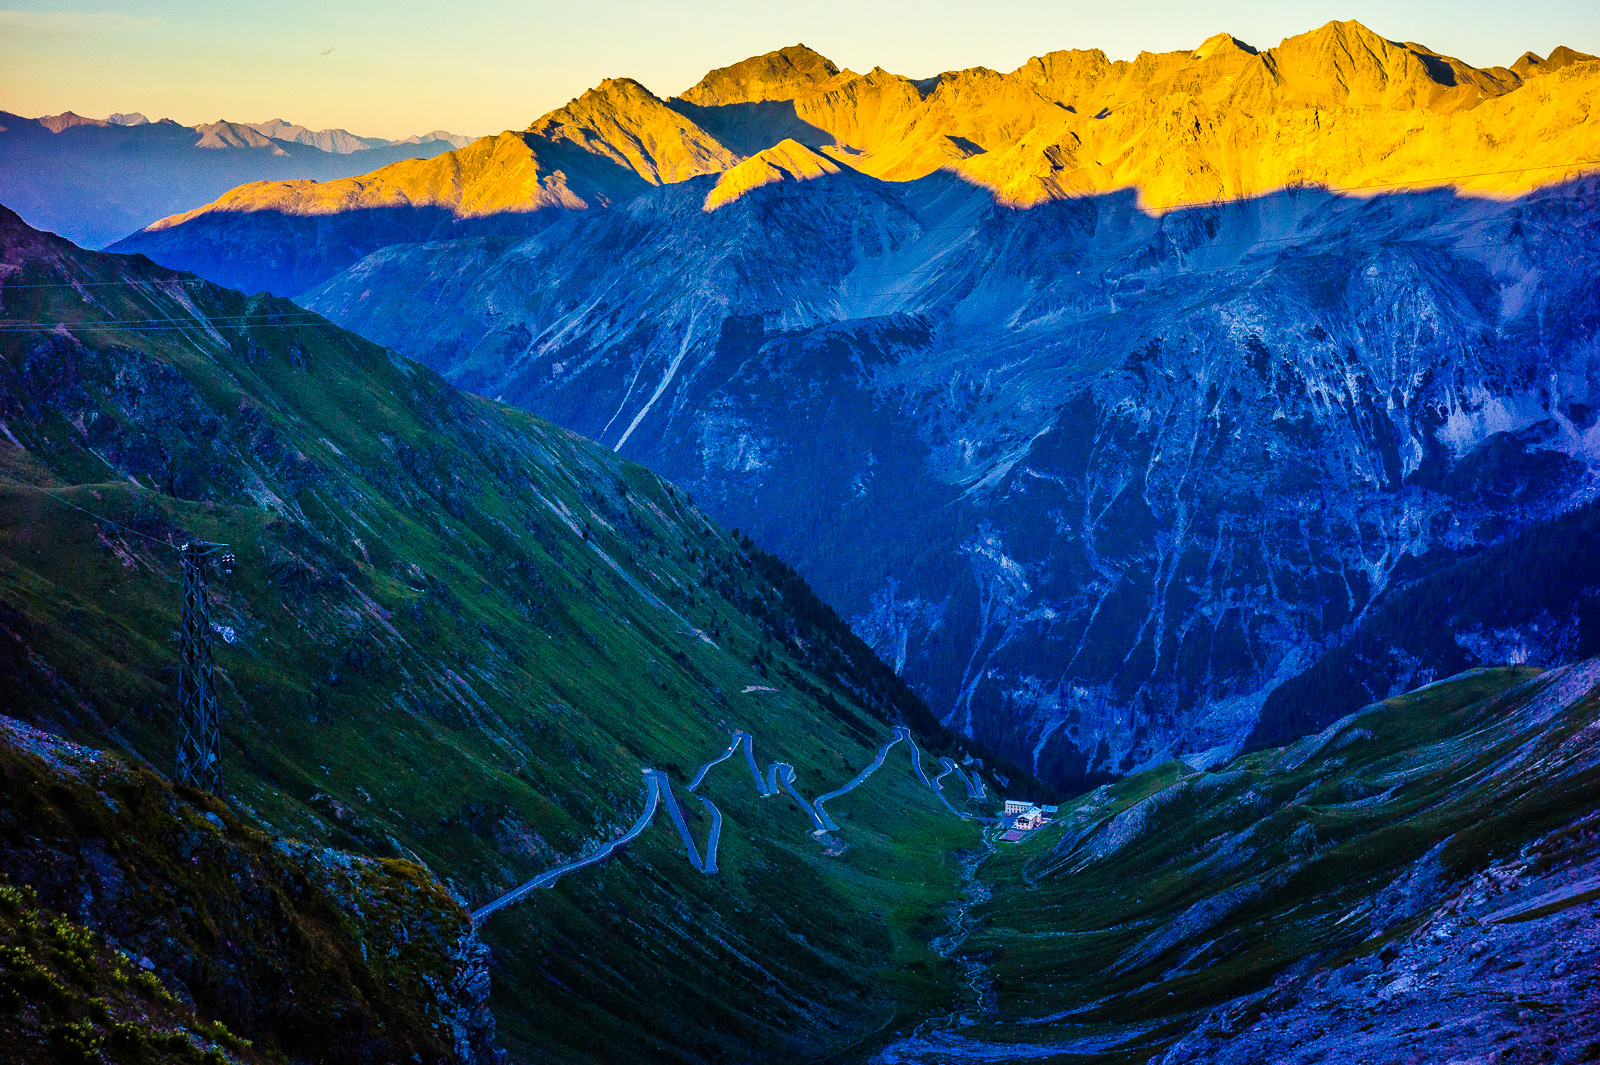 Sonnenuntergang in den Alpen, letztes Licht auf den Bergen, die Stilfserjochstraße liegt schon im Schatten